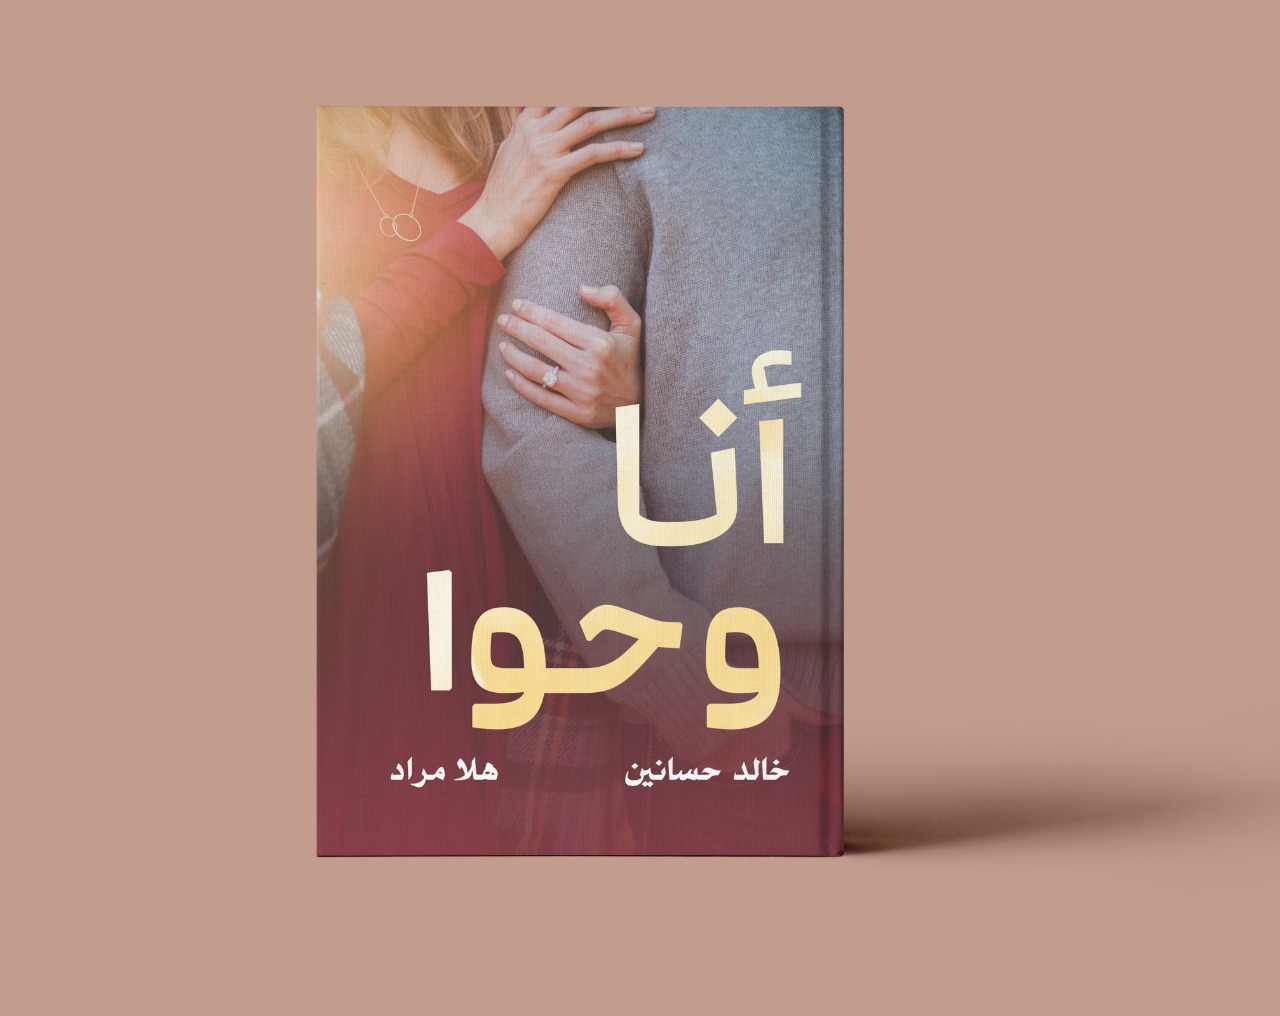   «أنا وحوا» كتاب يتناول صراع آدم وحواء وأسباب فشل الزواج في مصر